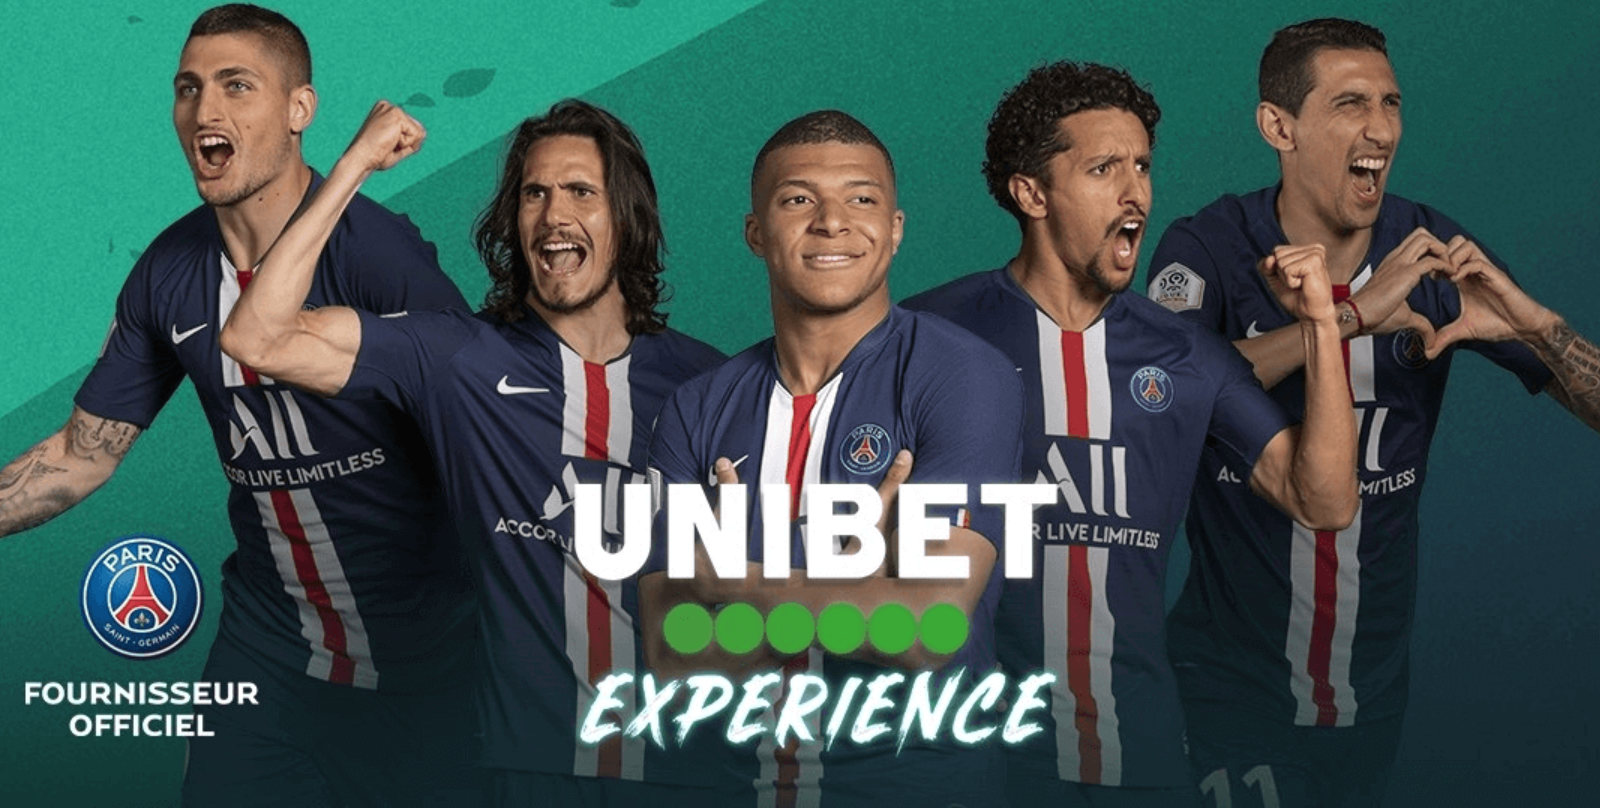 Unibet connexion en France